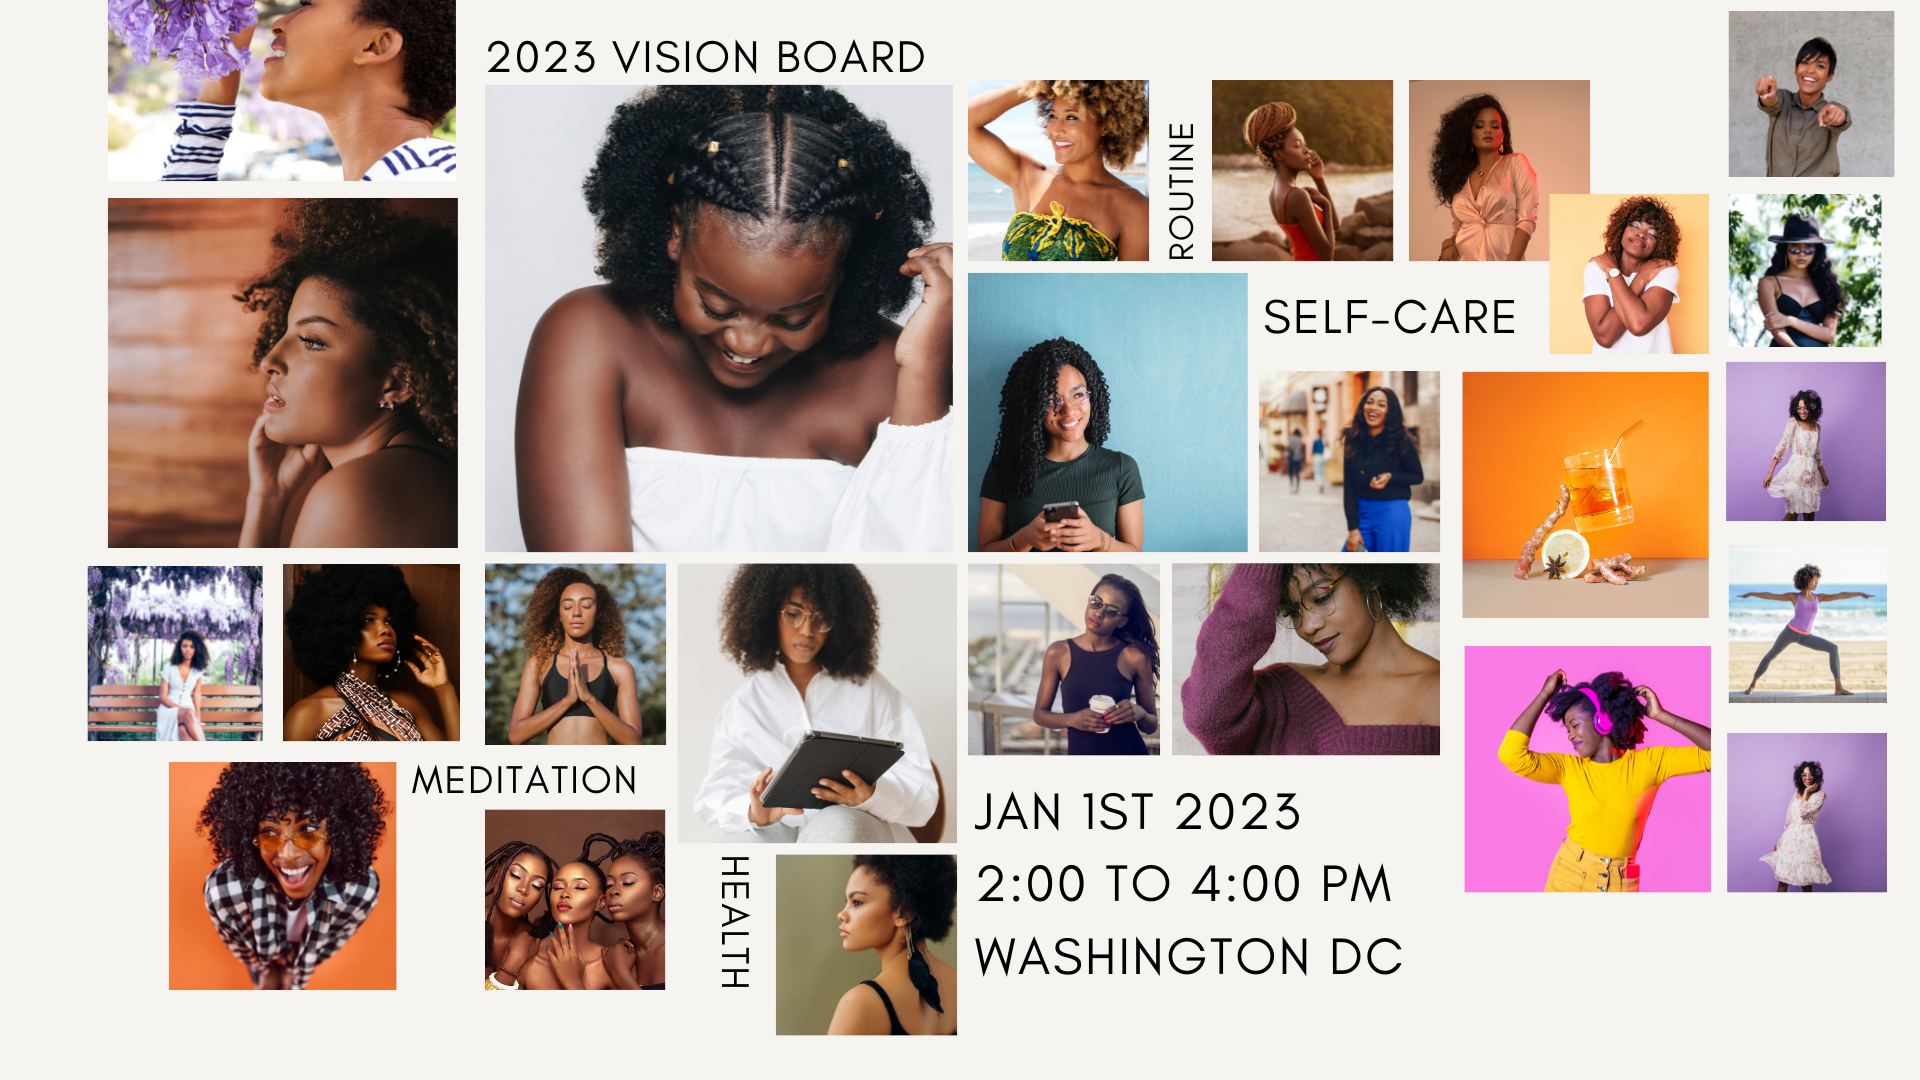 2023 Vision Board Event